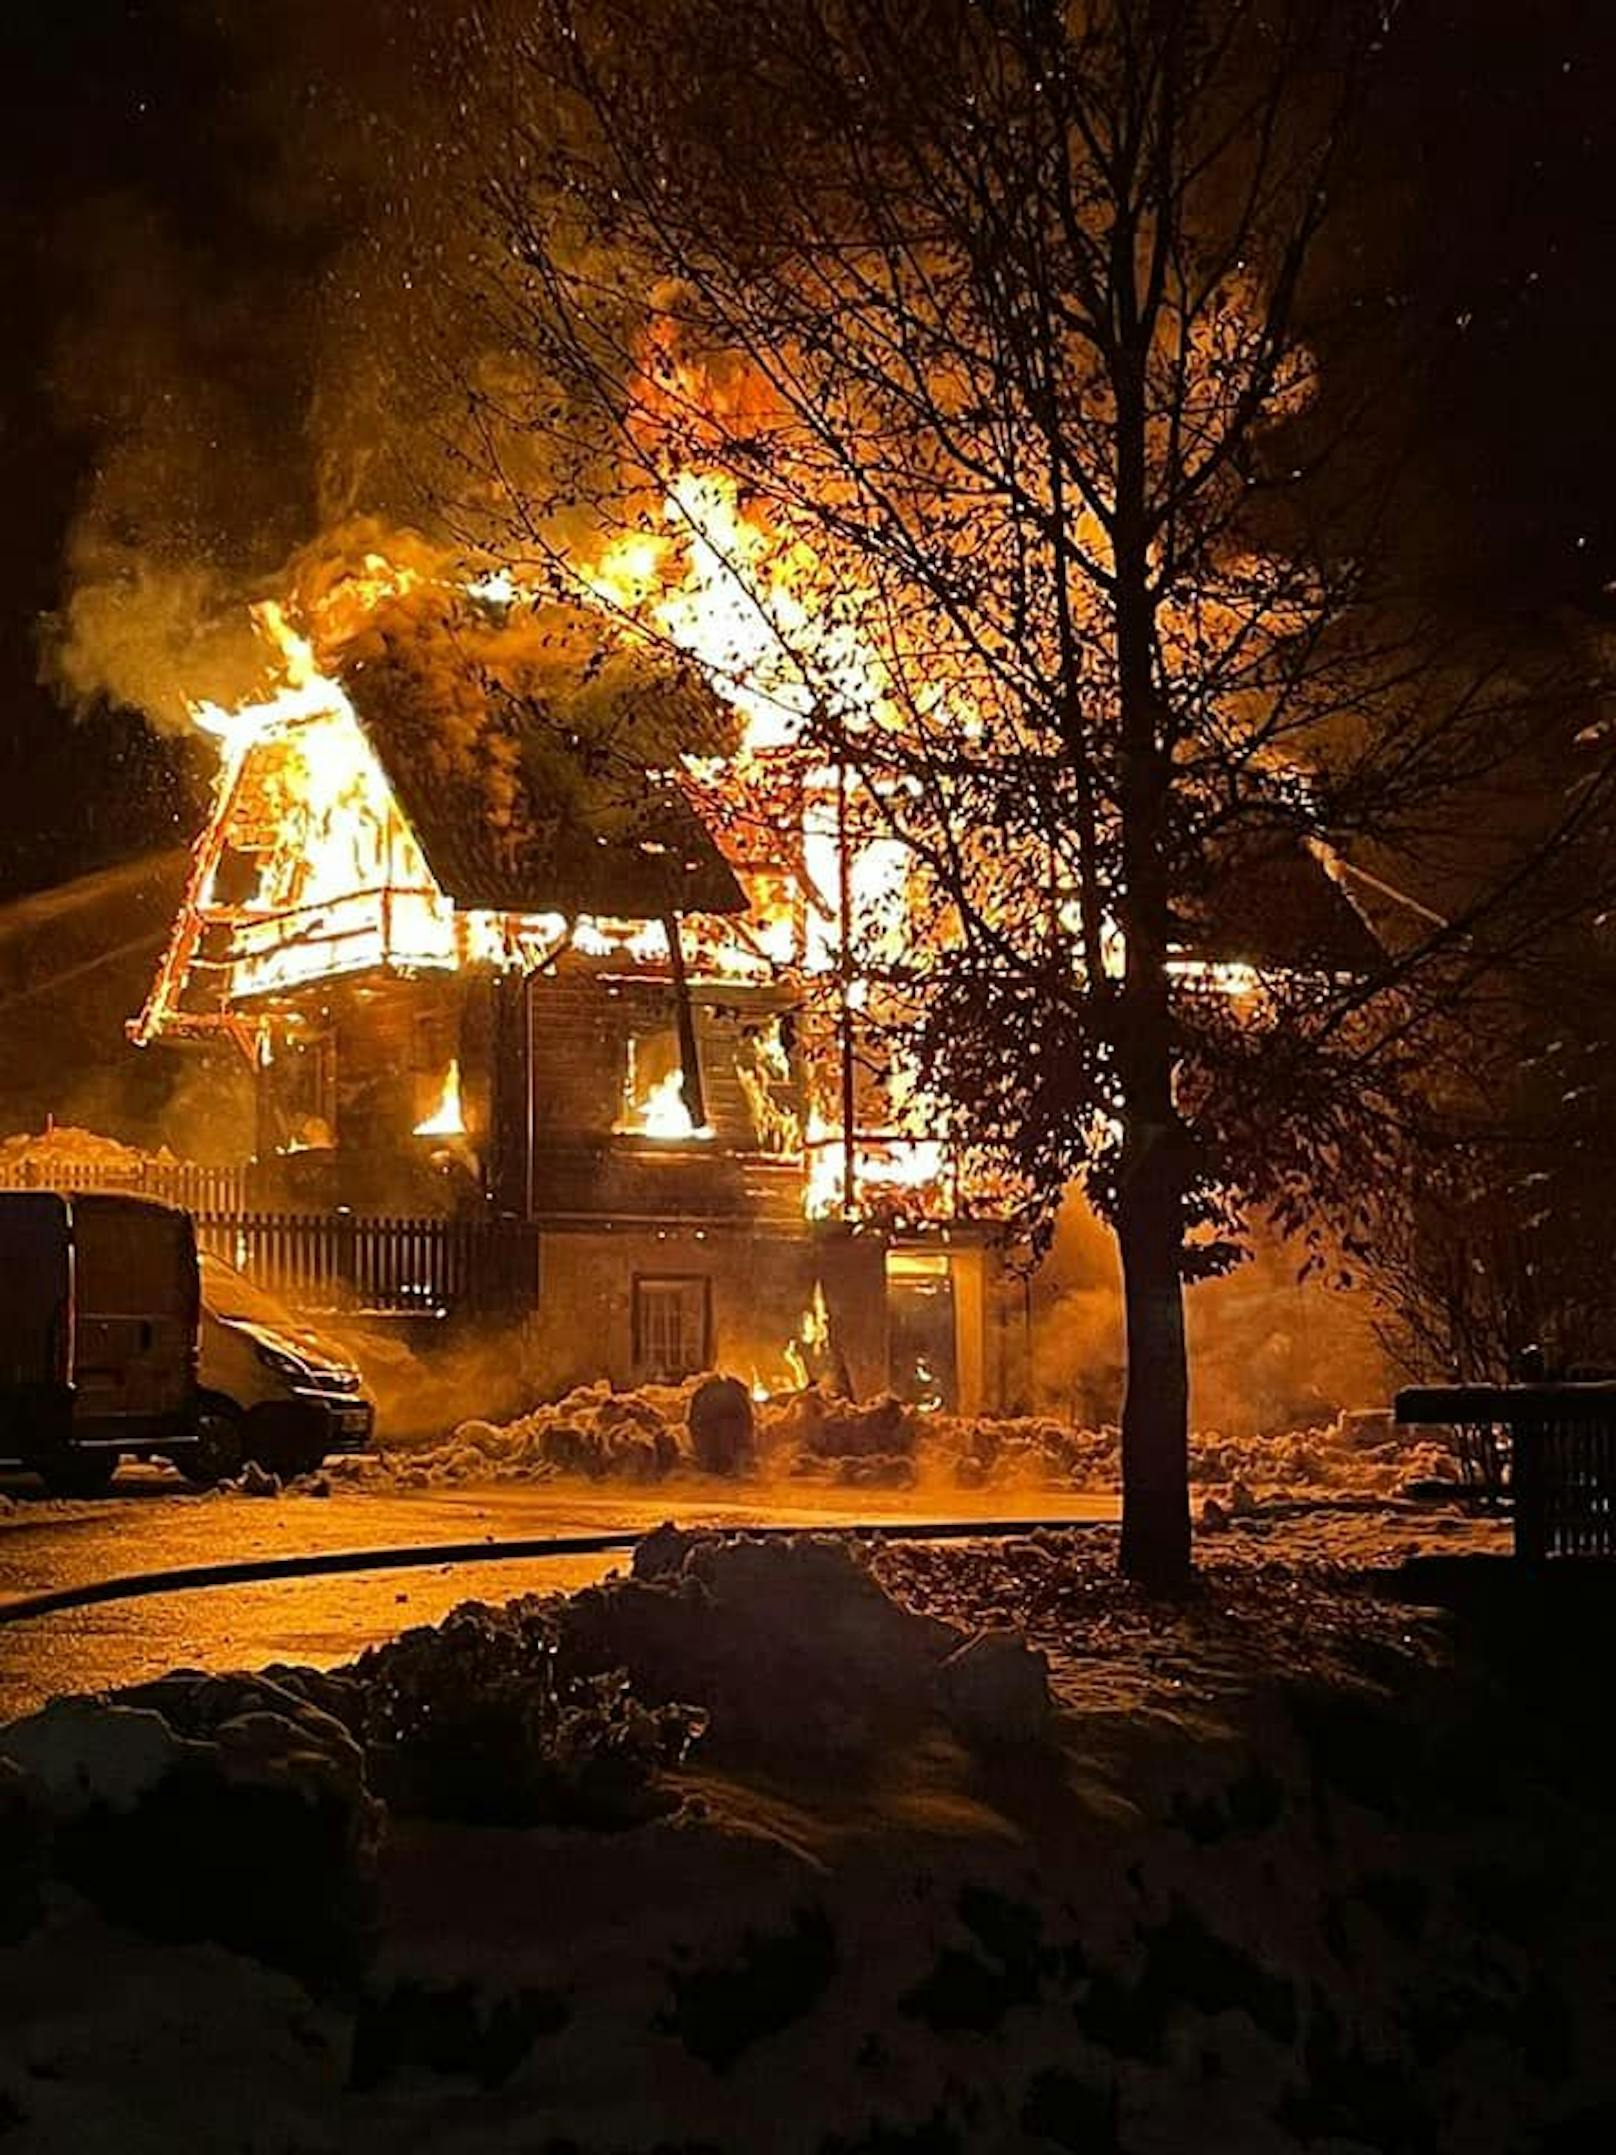 Über 100 Einsatzkräfte stehen derzeit bei Brand eines Einfamilienhauses im Bezirk Feldkirchen (K) im Großeinsatz.